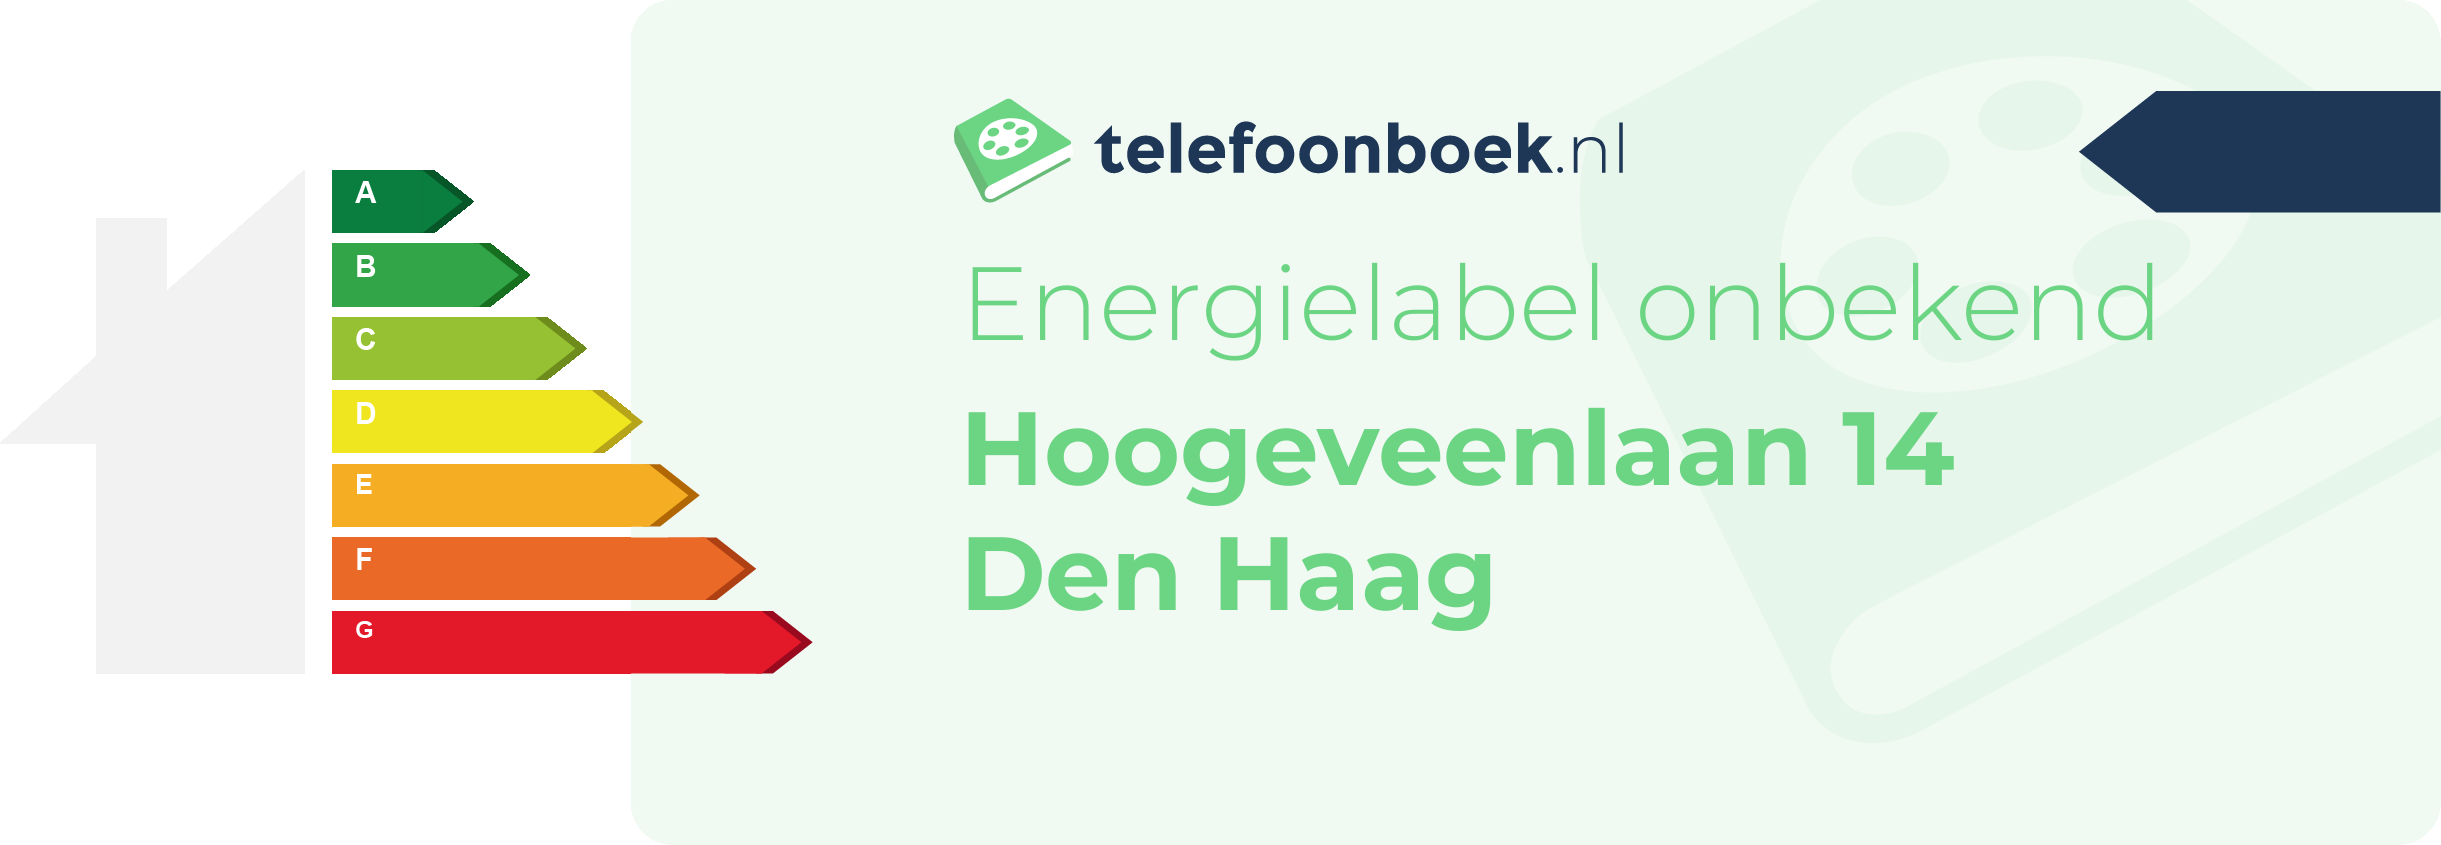 Energielabel Hoogeveenlaan 14 Den Haag